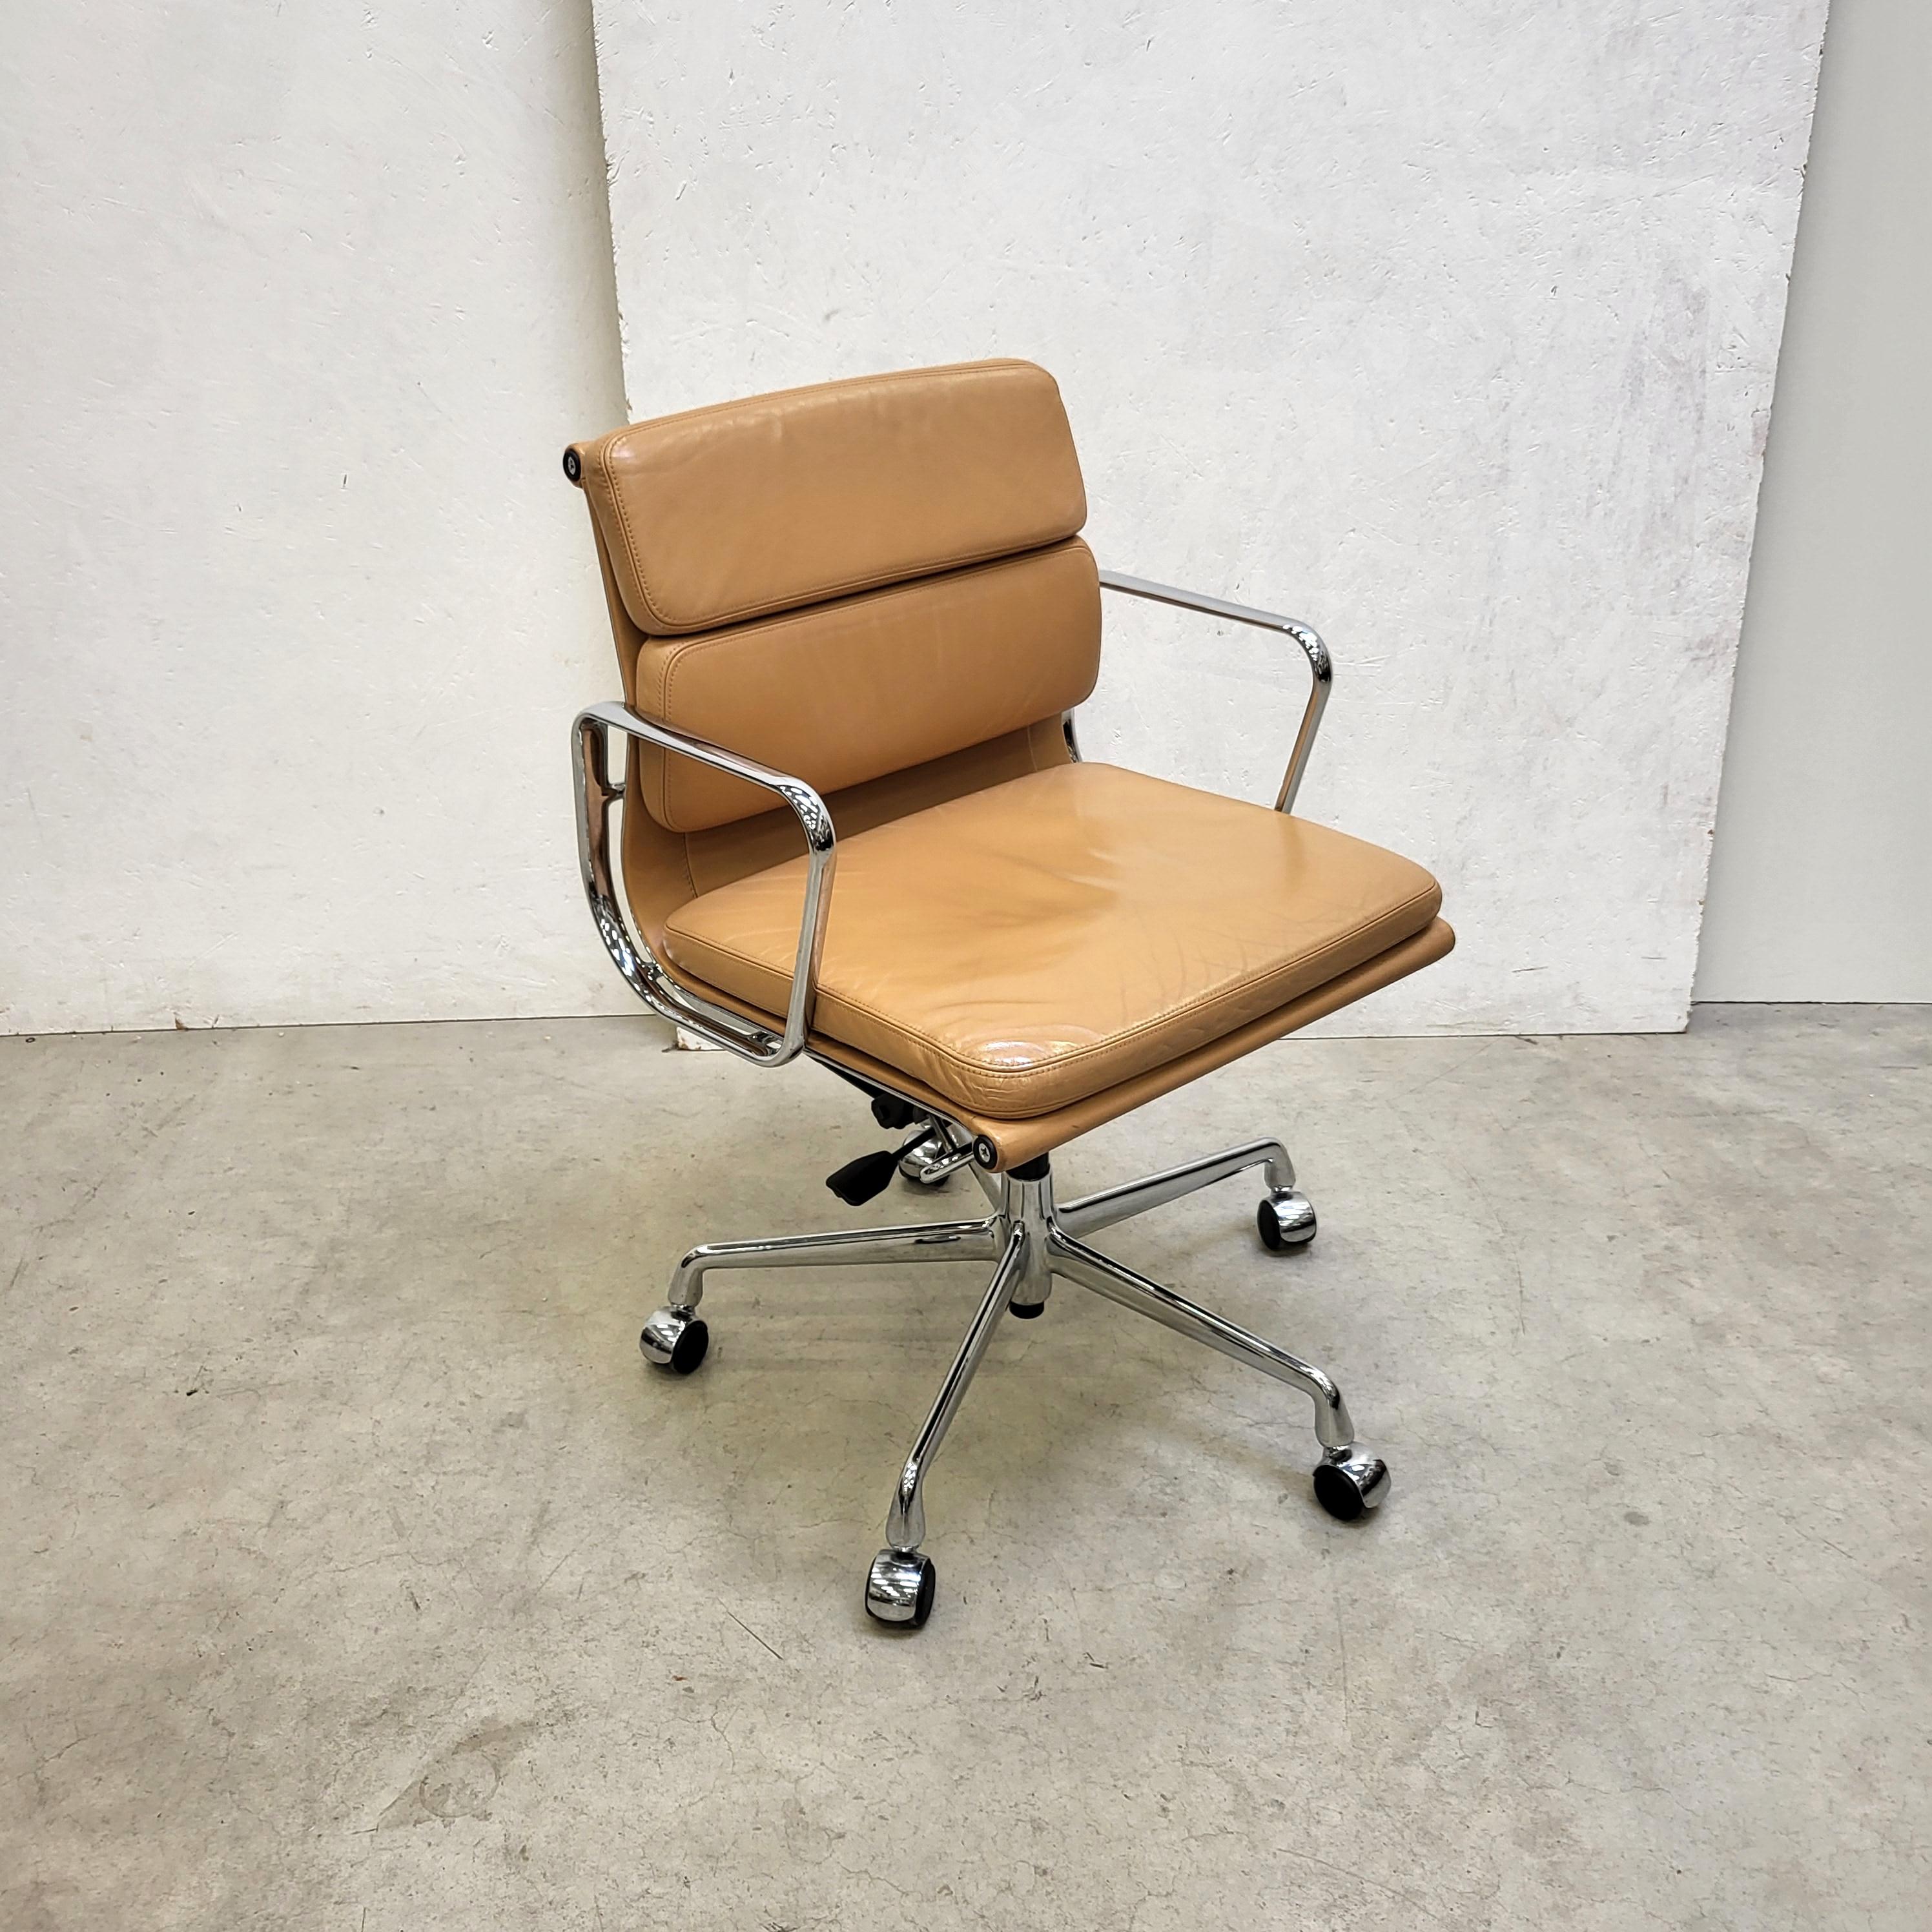 Rare chaise de bureau Cognac premium soft pad modèle EA217 produite par Vitra. 
La chaise a une structure en aluminium chromé et a été fabriquée en 2003.

Toutes les chaises sont réglables en hauteur et dotées d'un mécanisme d'inclinaison.

Nous